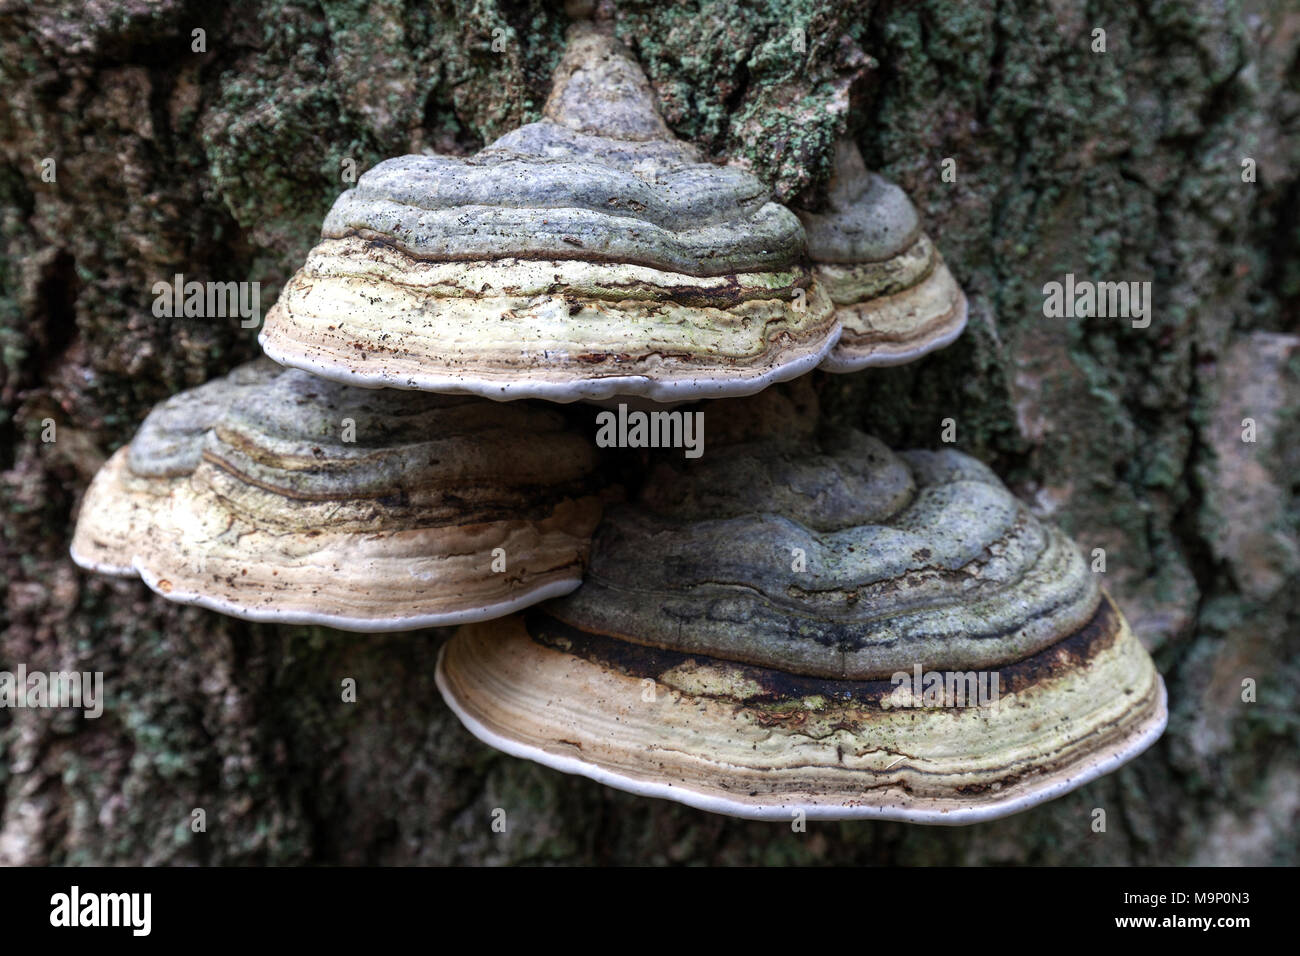 Yesca hongos (Fomes fomentarius) crecen en el tronco de un árbol, Bosque Darß, Fischland-Darß-Zingst, Laguna de Pomerania Occidental Foto de stock